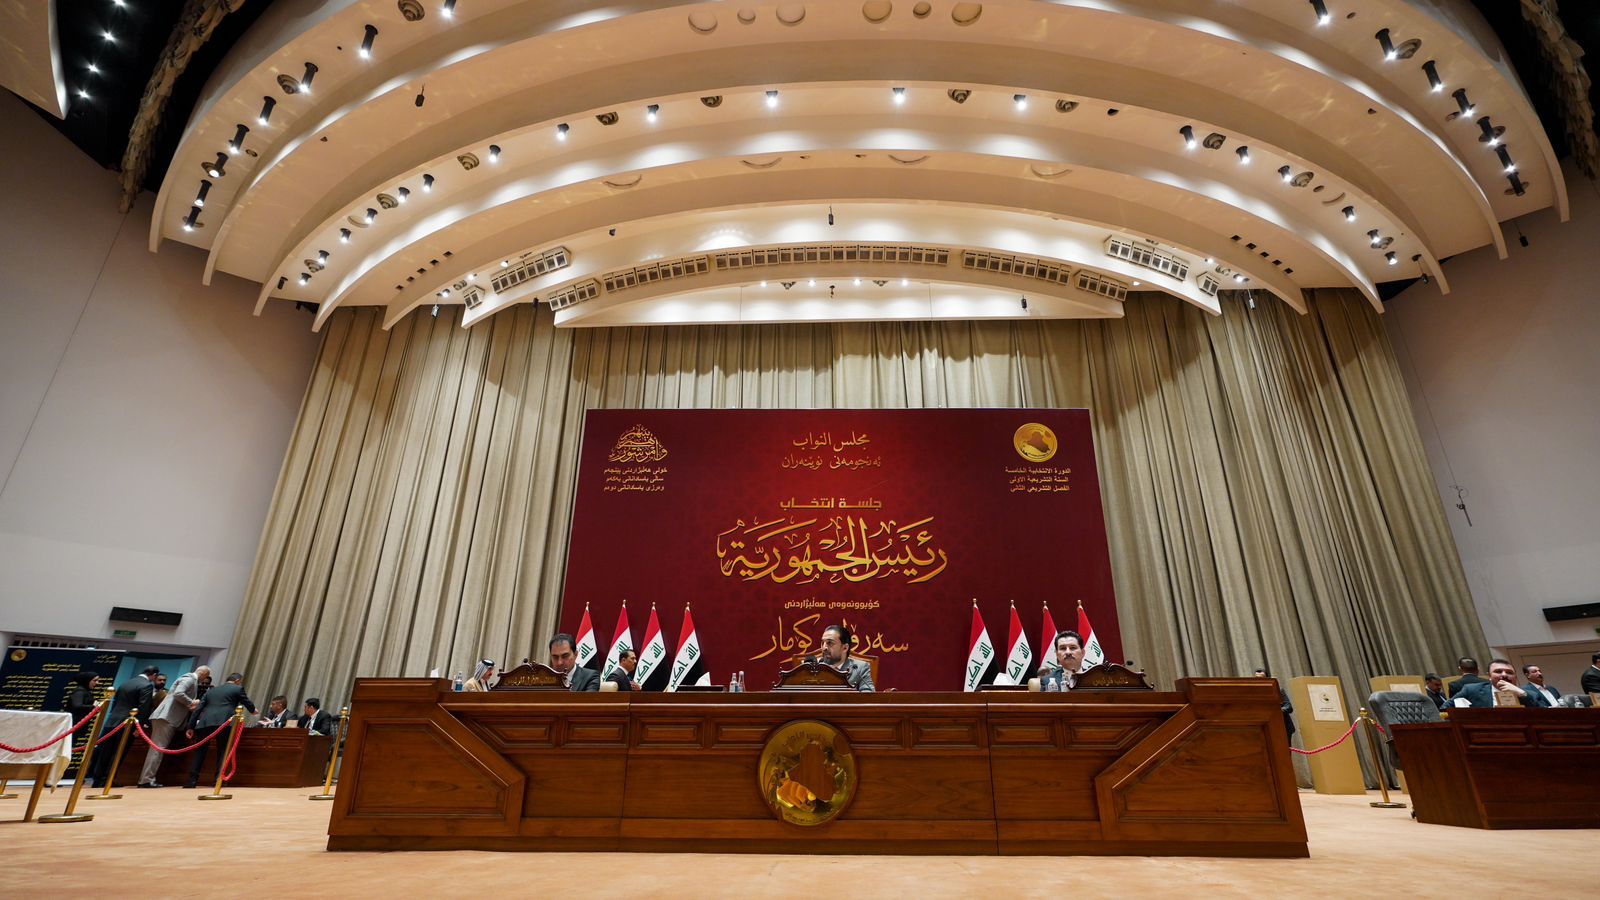 البرلمان العراقي يخفق بجولته الأولى في انتخاب رئيس للجمهورية